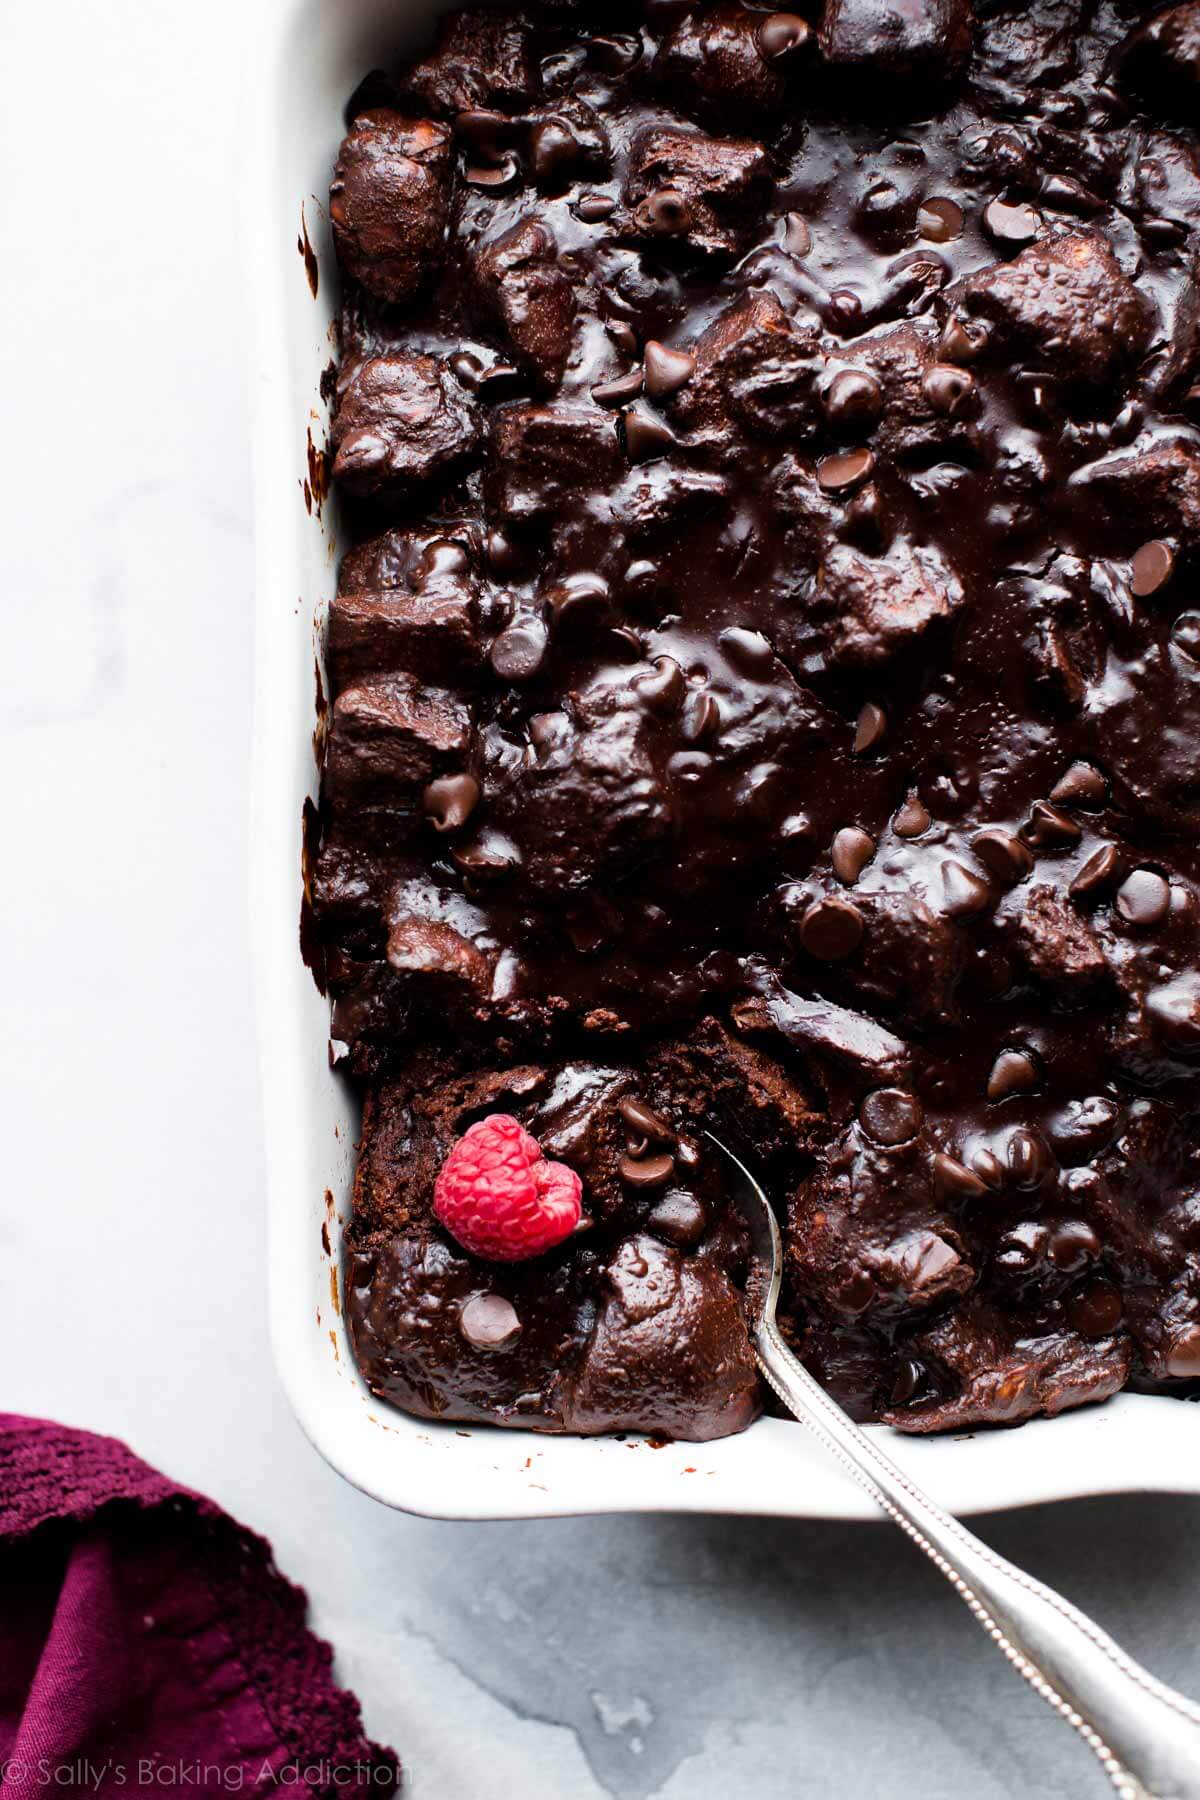 Ce pudding au pain au chocolat noir a le goût d'une poêle de brownies chauds et fondants. Pour le meilleur goût et la meilleure texture, utilisez du pain challah et du vrai chocolat. Recette sur sallysbakingaddiction.com